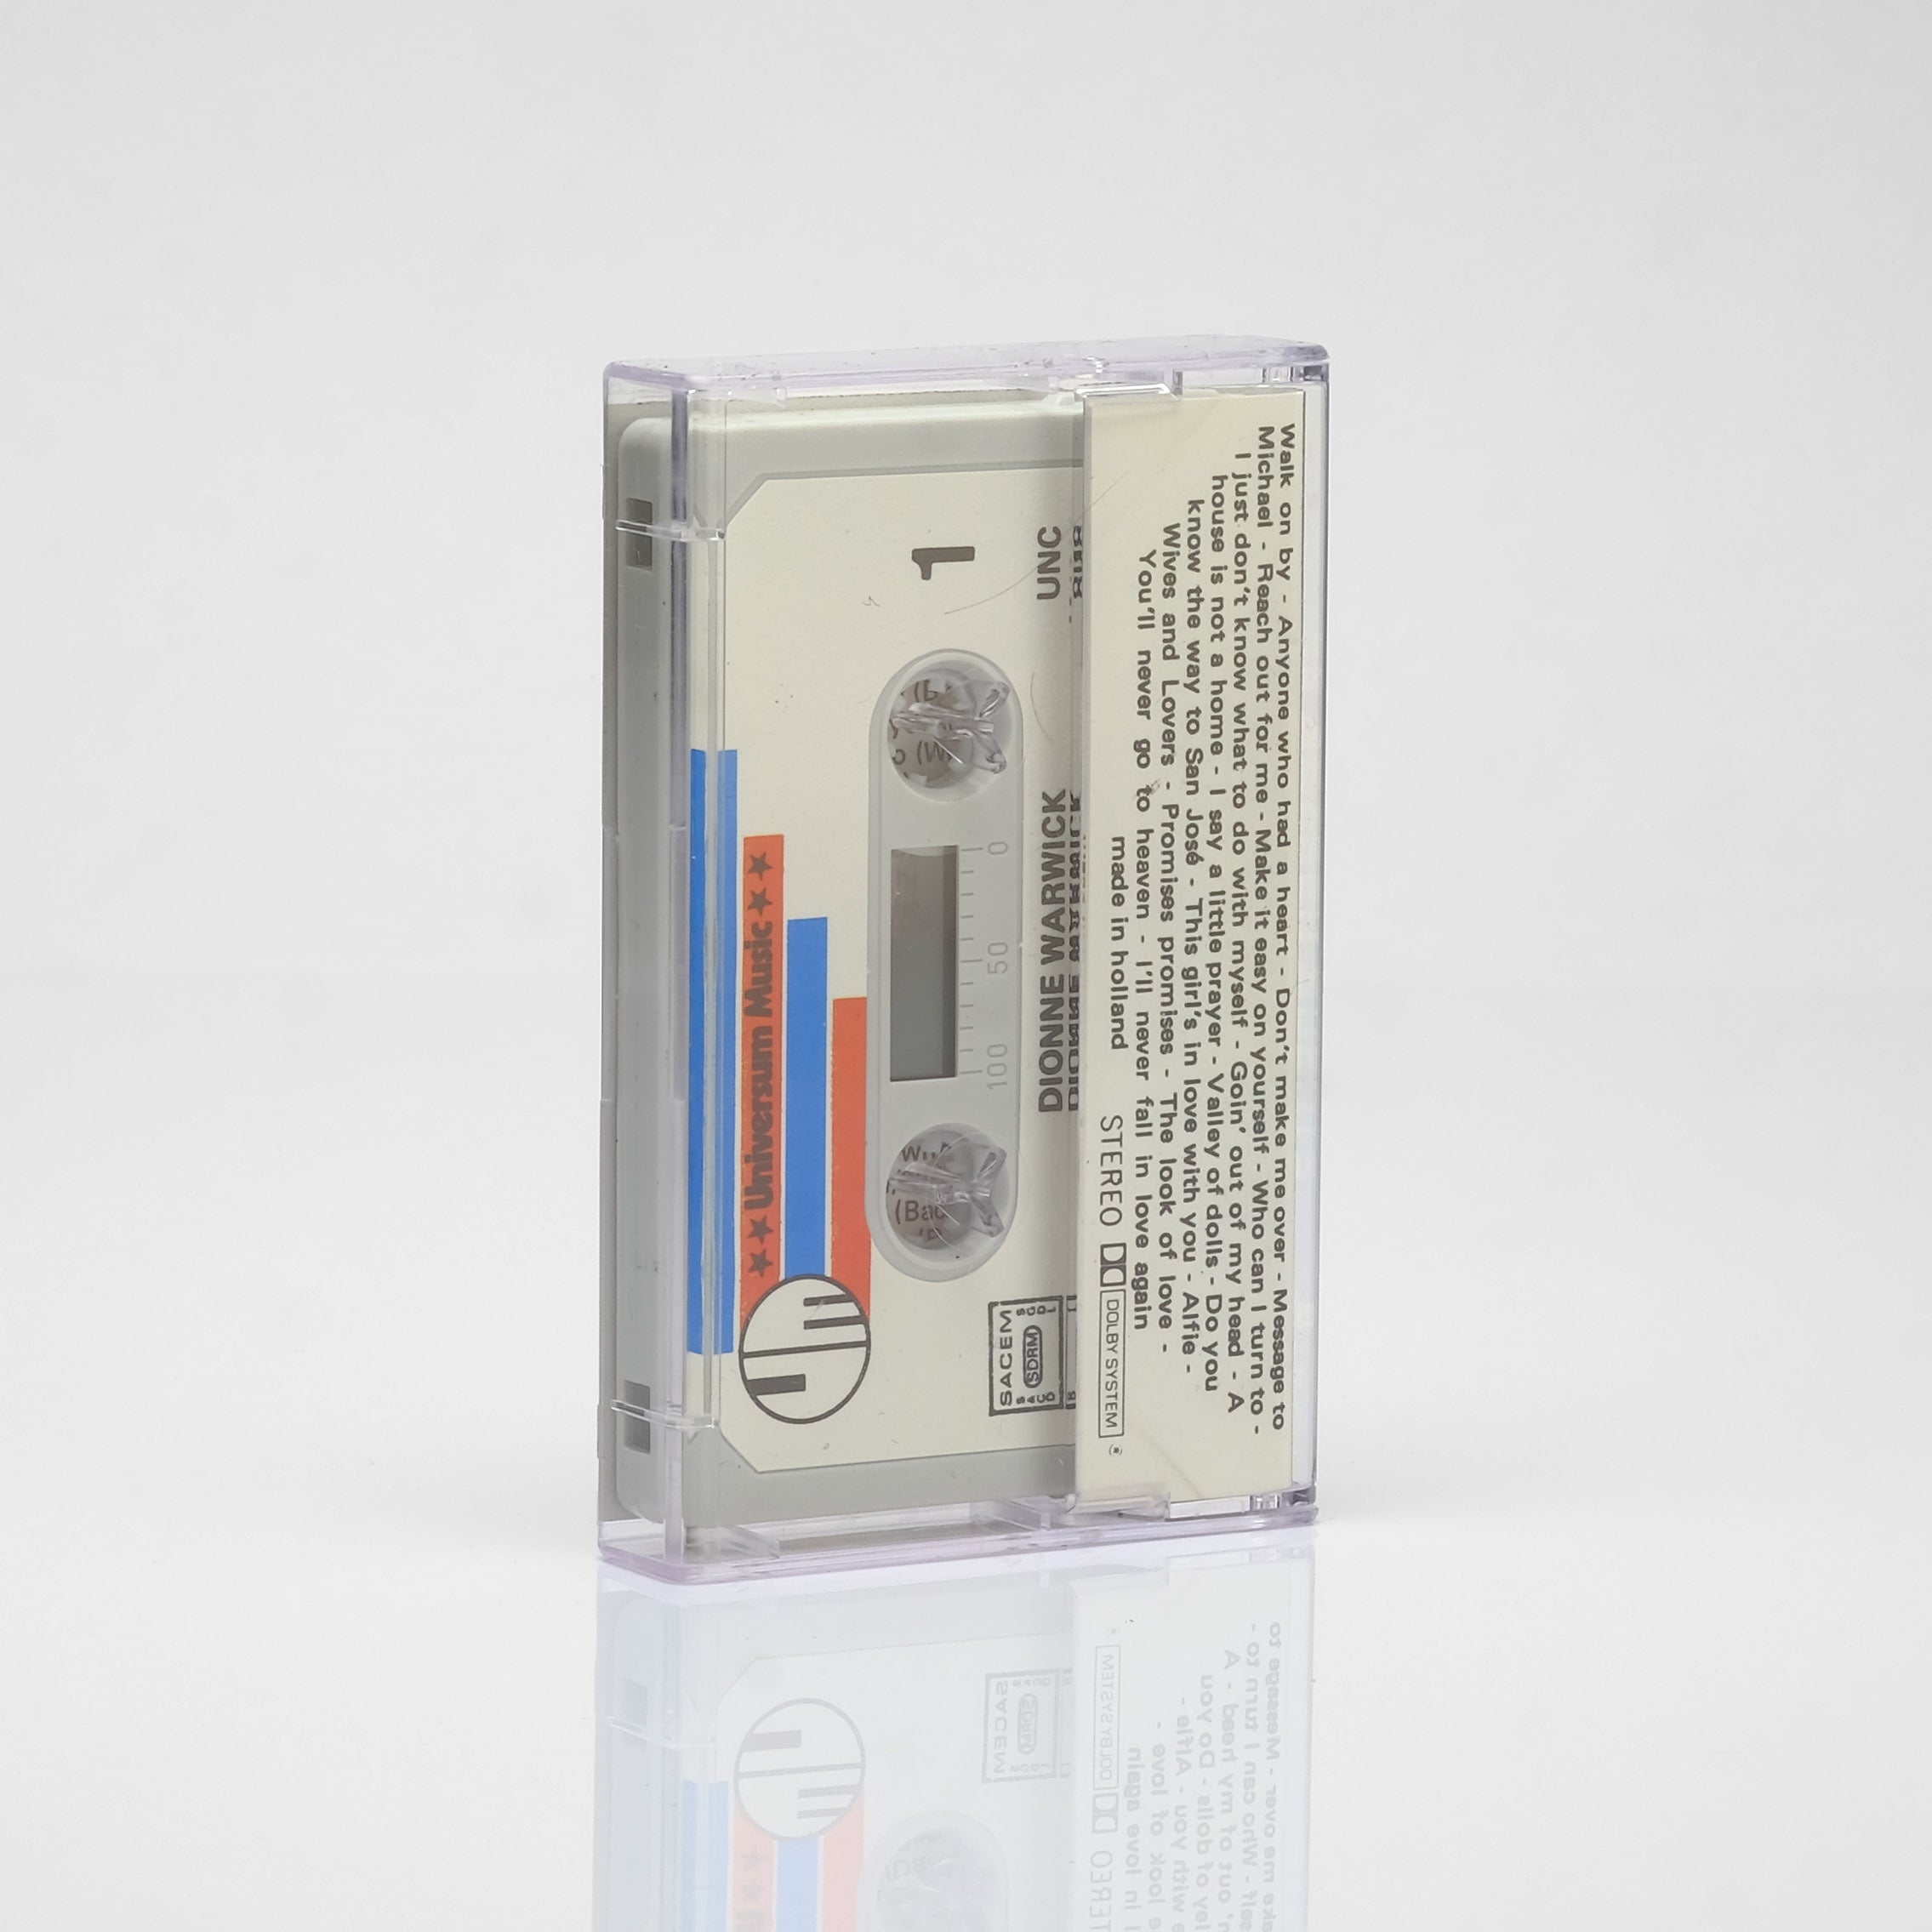 Dionne Warwick - 20 Golden Greats Cassette Tape